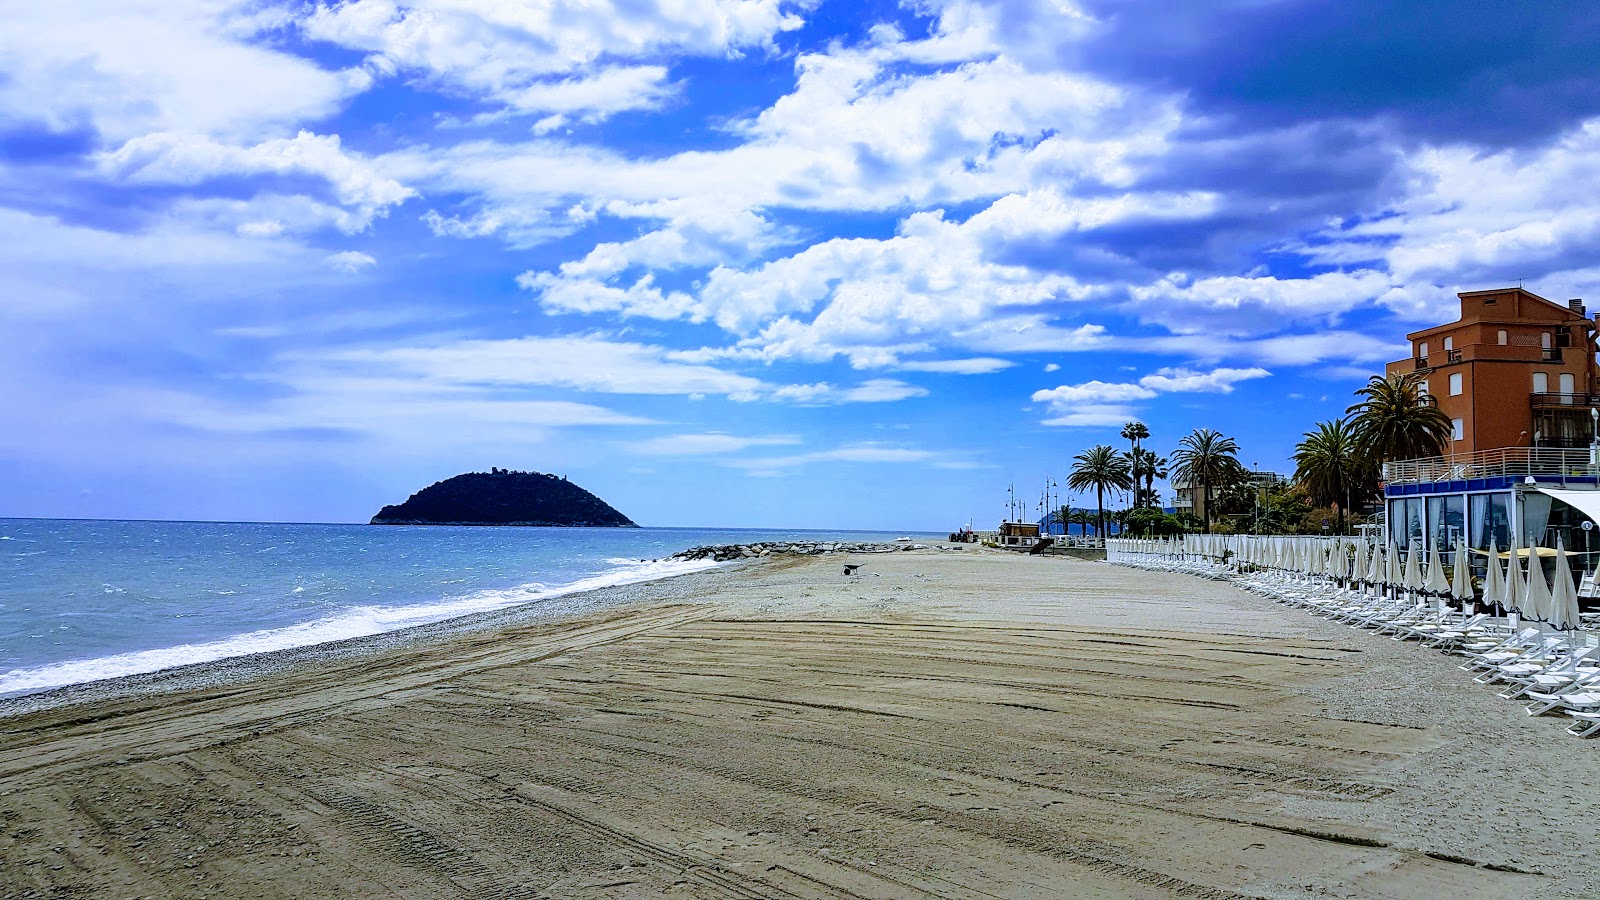 Foto von Doria beach mit geräumiger strand